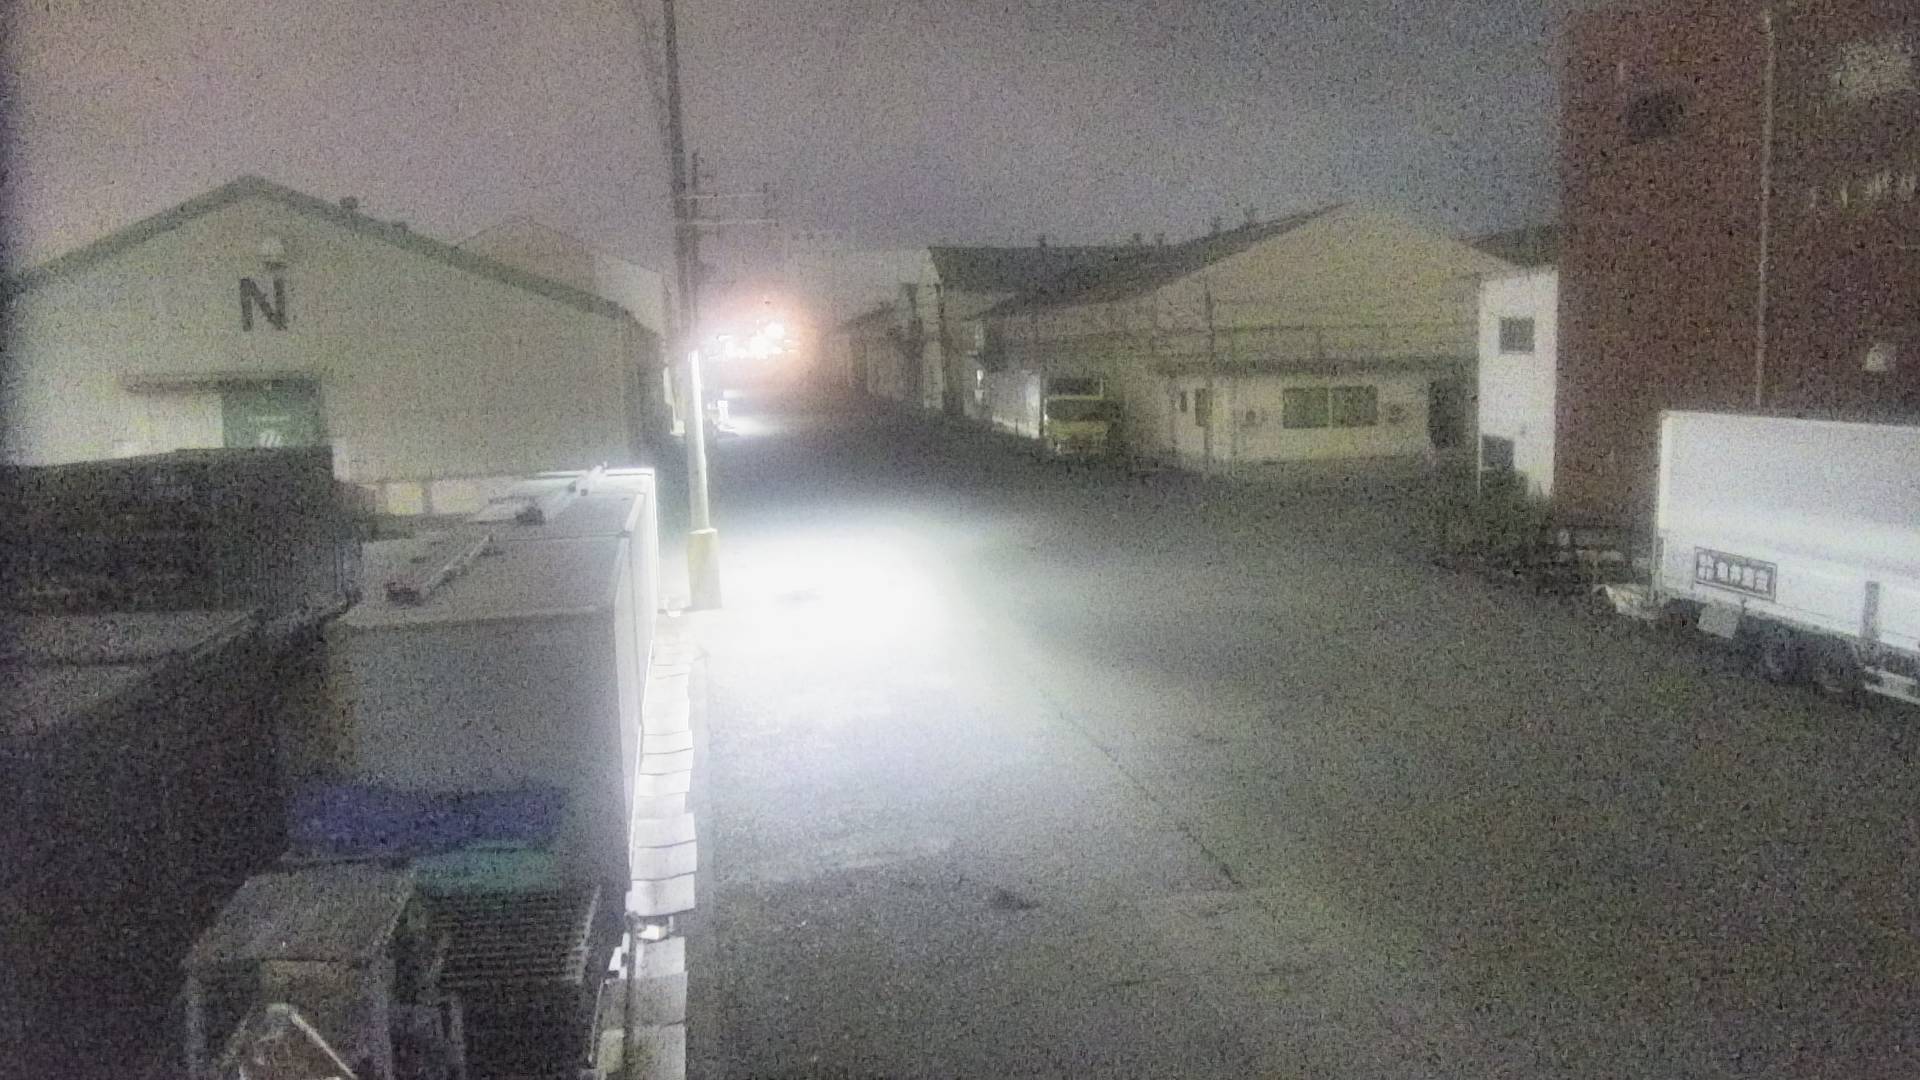 兵庫県の一般道ライブカメラ｢兵庫突堤･兵庫埠頭３｣のライブ画像